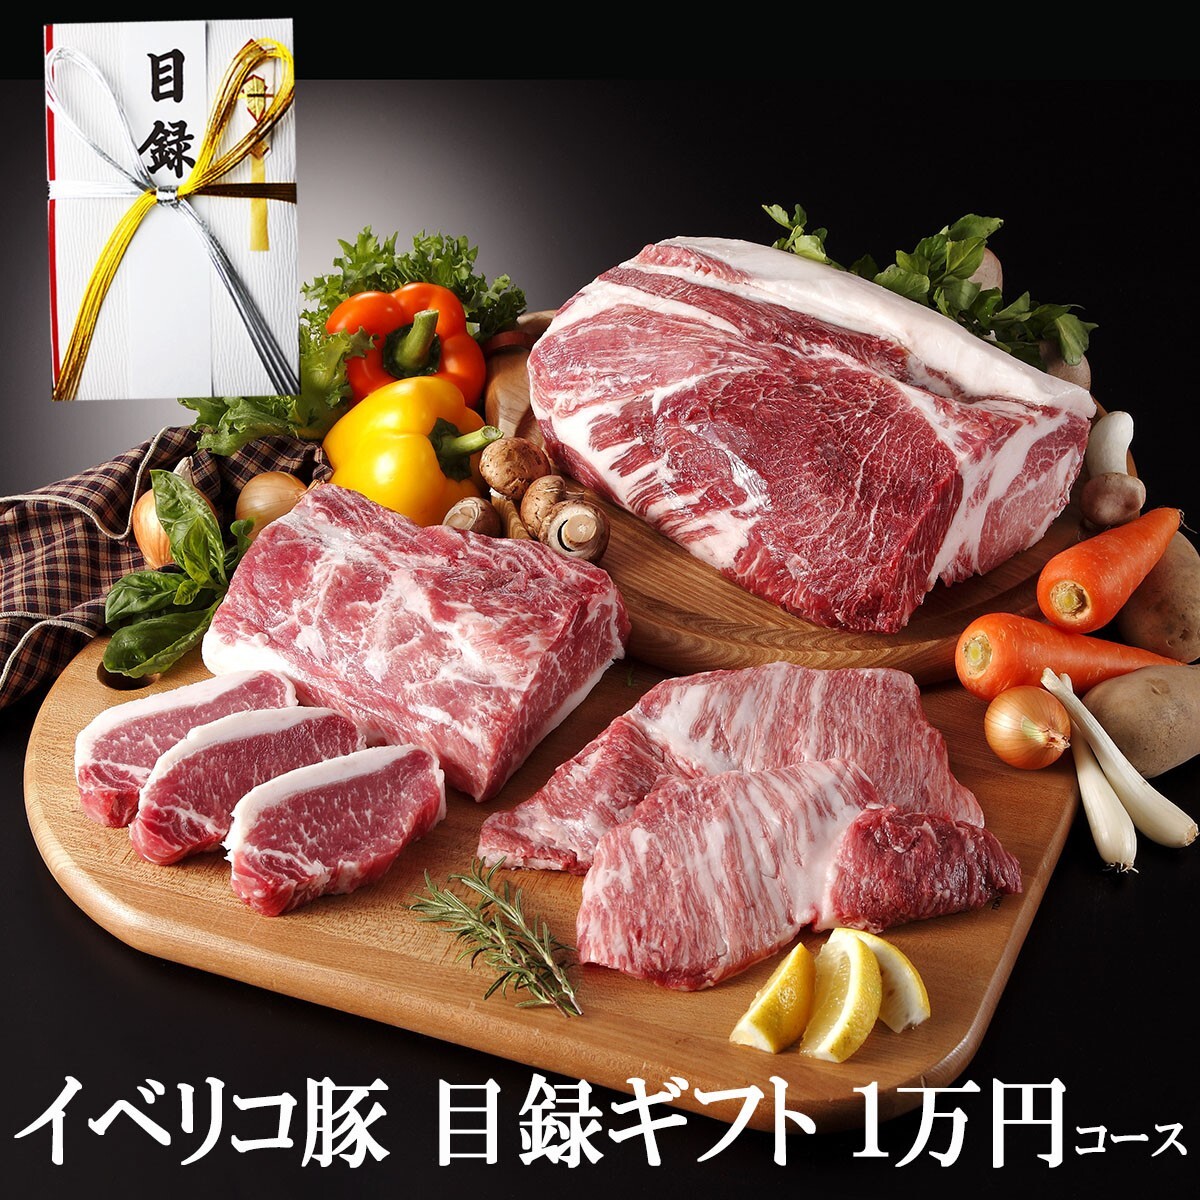 Собранные призовые призовые подарки Iberico Pig Gift 10 000 иен набор с панельным конкурсом гольфа Meat Luxury